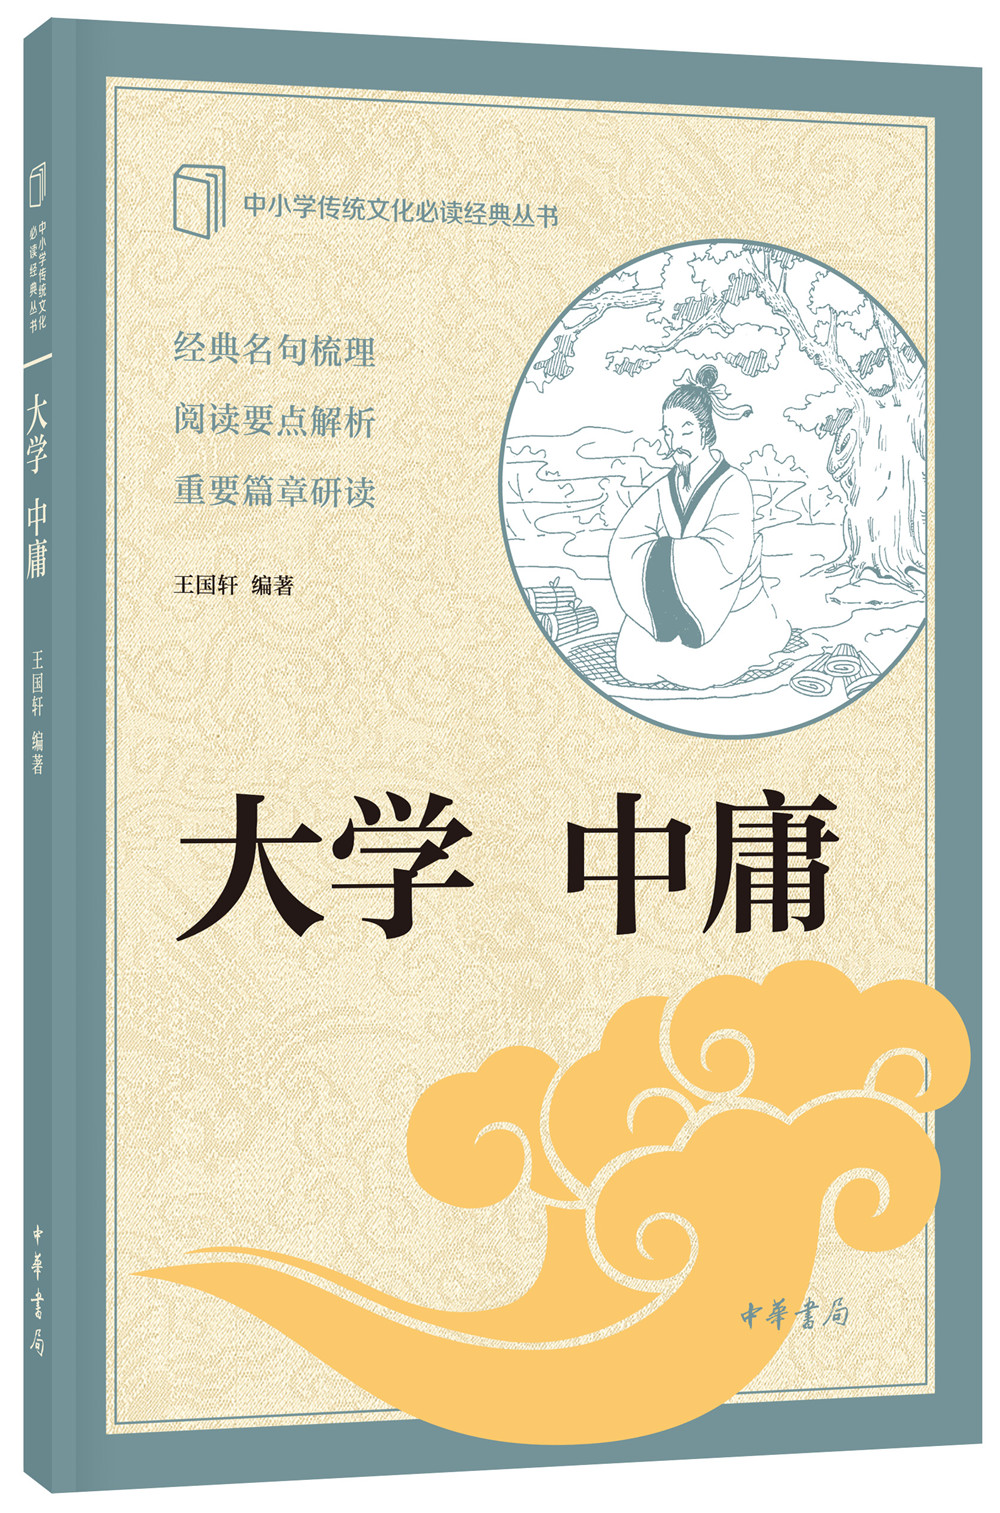 大学中庸 中华书局出版中小学传统文化必读经典 mobi格式下载